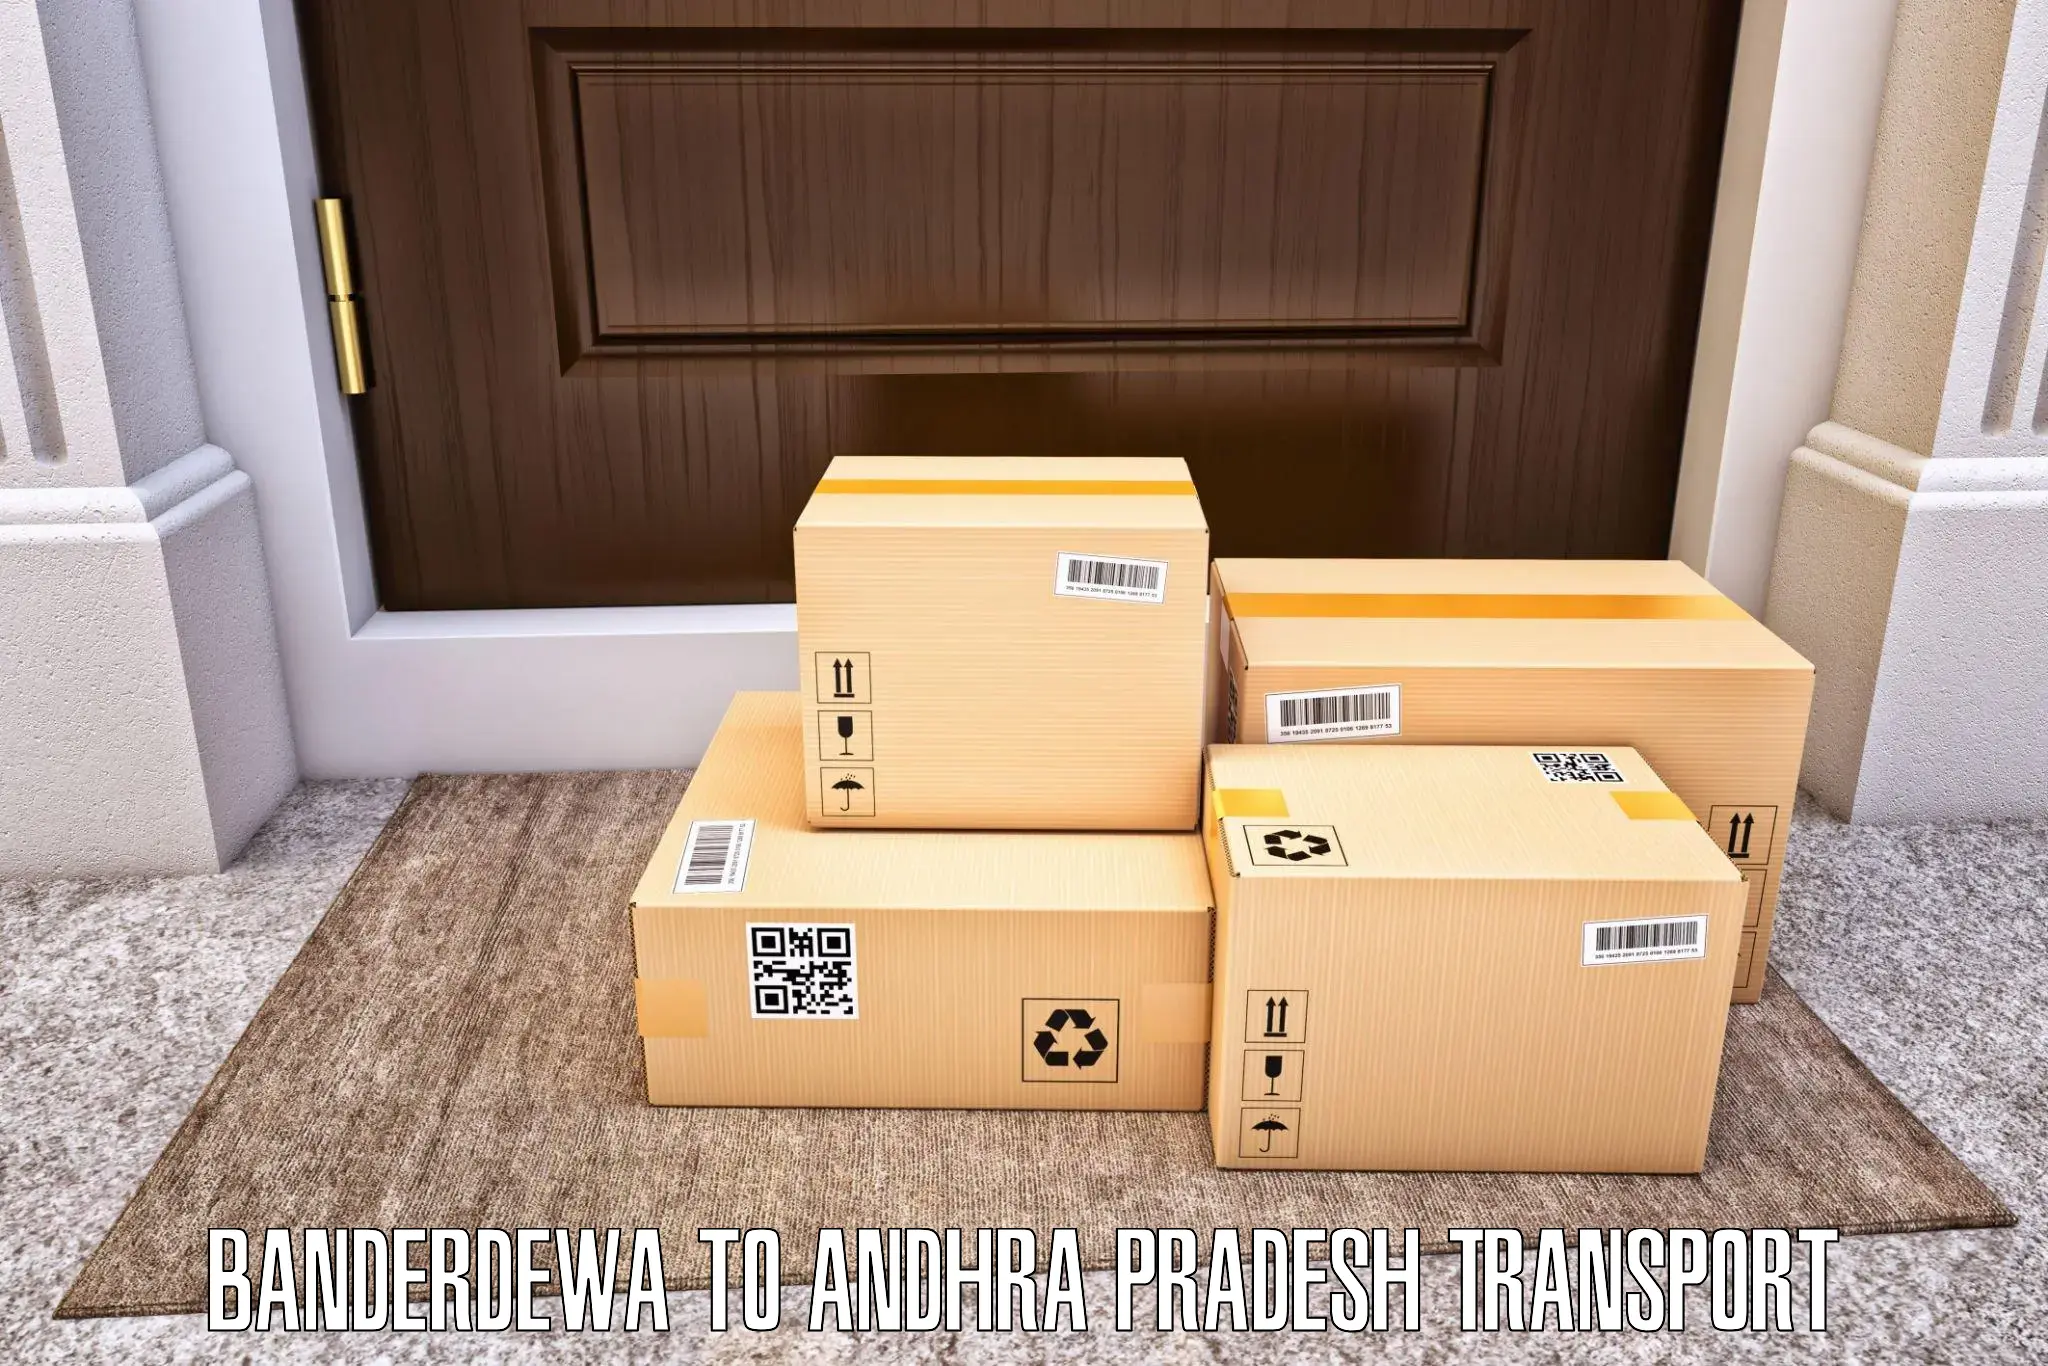 Goods delivery service Banderdewa to Mantada